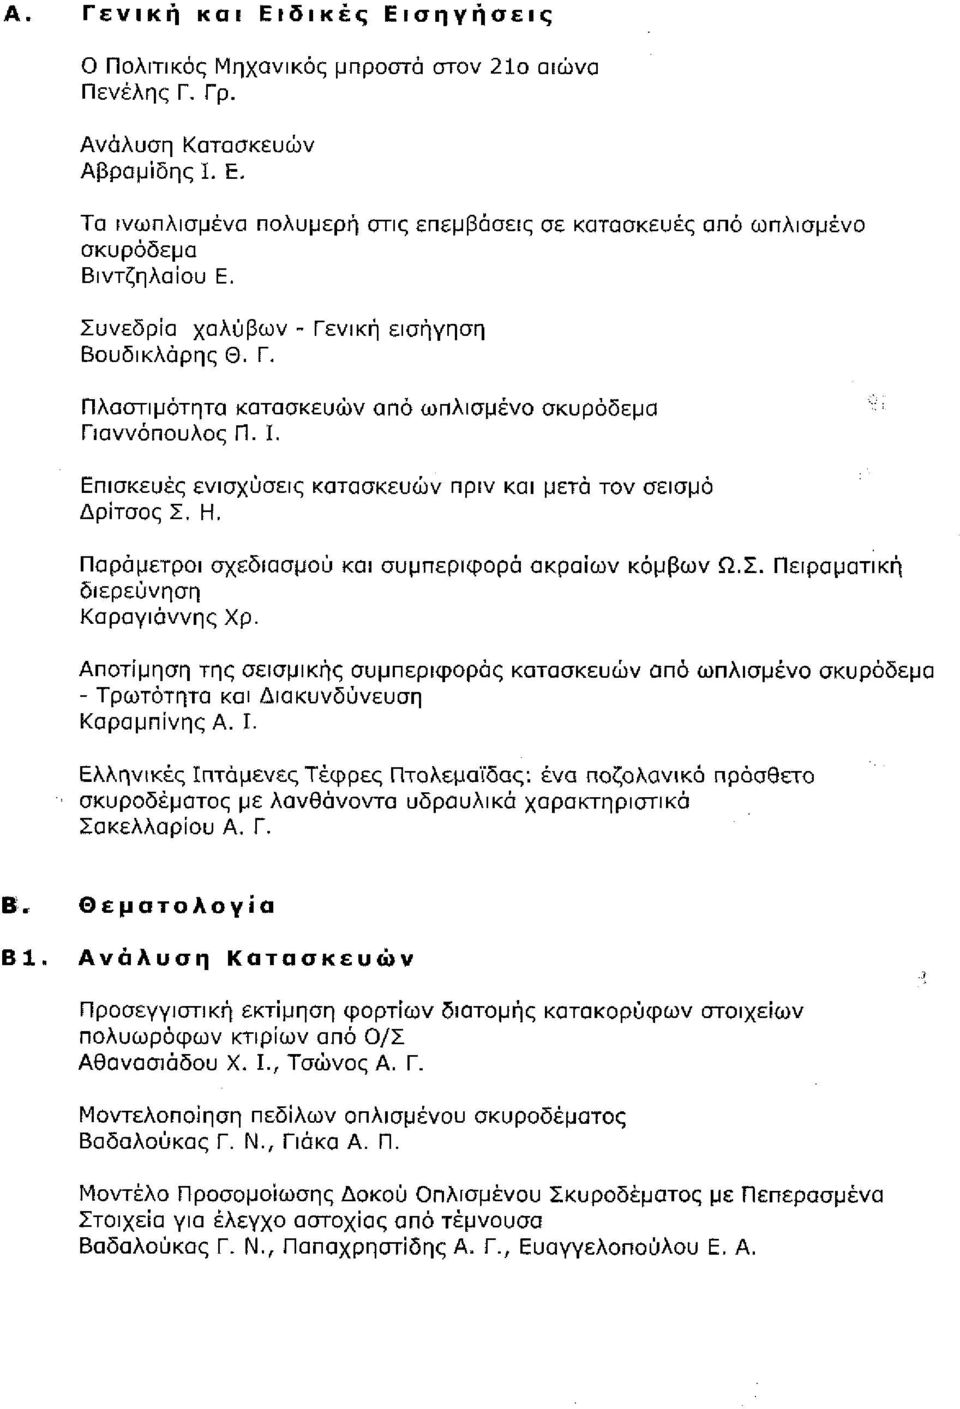 Συνεδρία χαλύβων - Γενική εισήγηση Βουδικλάρης Θ. Γ., σελ. 68-77 } ' " ;" 1ΐ:> Α5. Πλαστιμότητα κατασκευών από ωπλισμενο σκυρόδεμα Γιαννόπουλος Π. Ι., σελ. 78-95 Άβ, Επισκευές ενισχύσεις κατασκευών πριν και μετά τον σεισμό Δρϊτσος Σ.